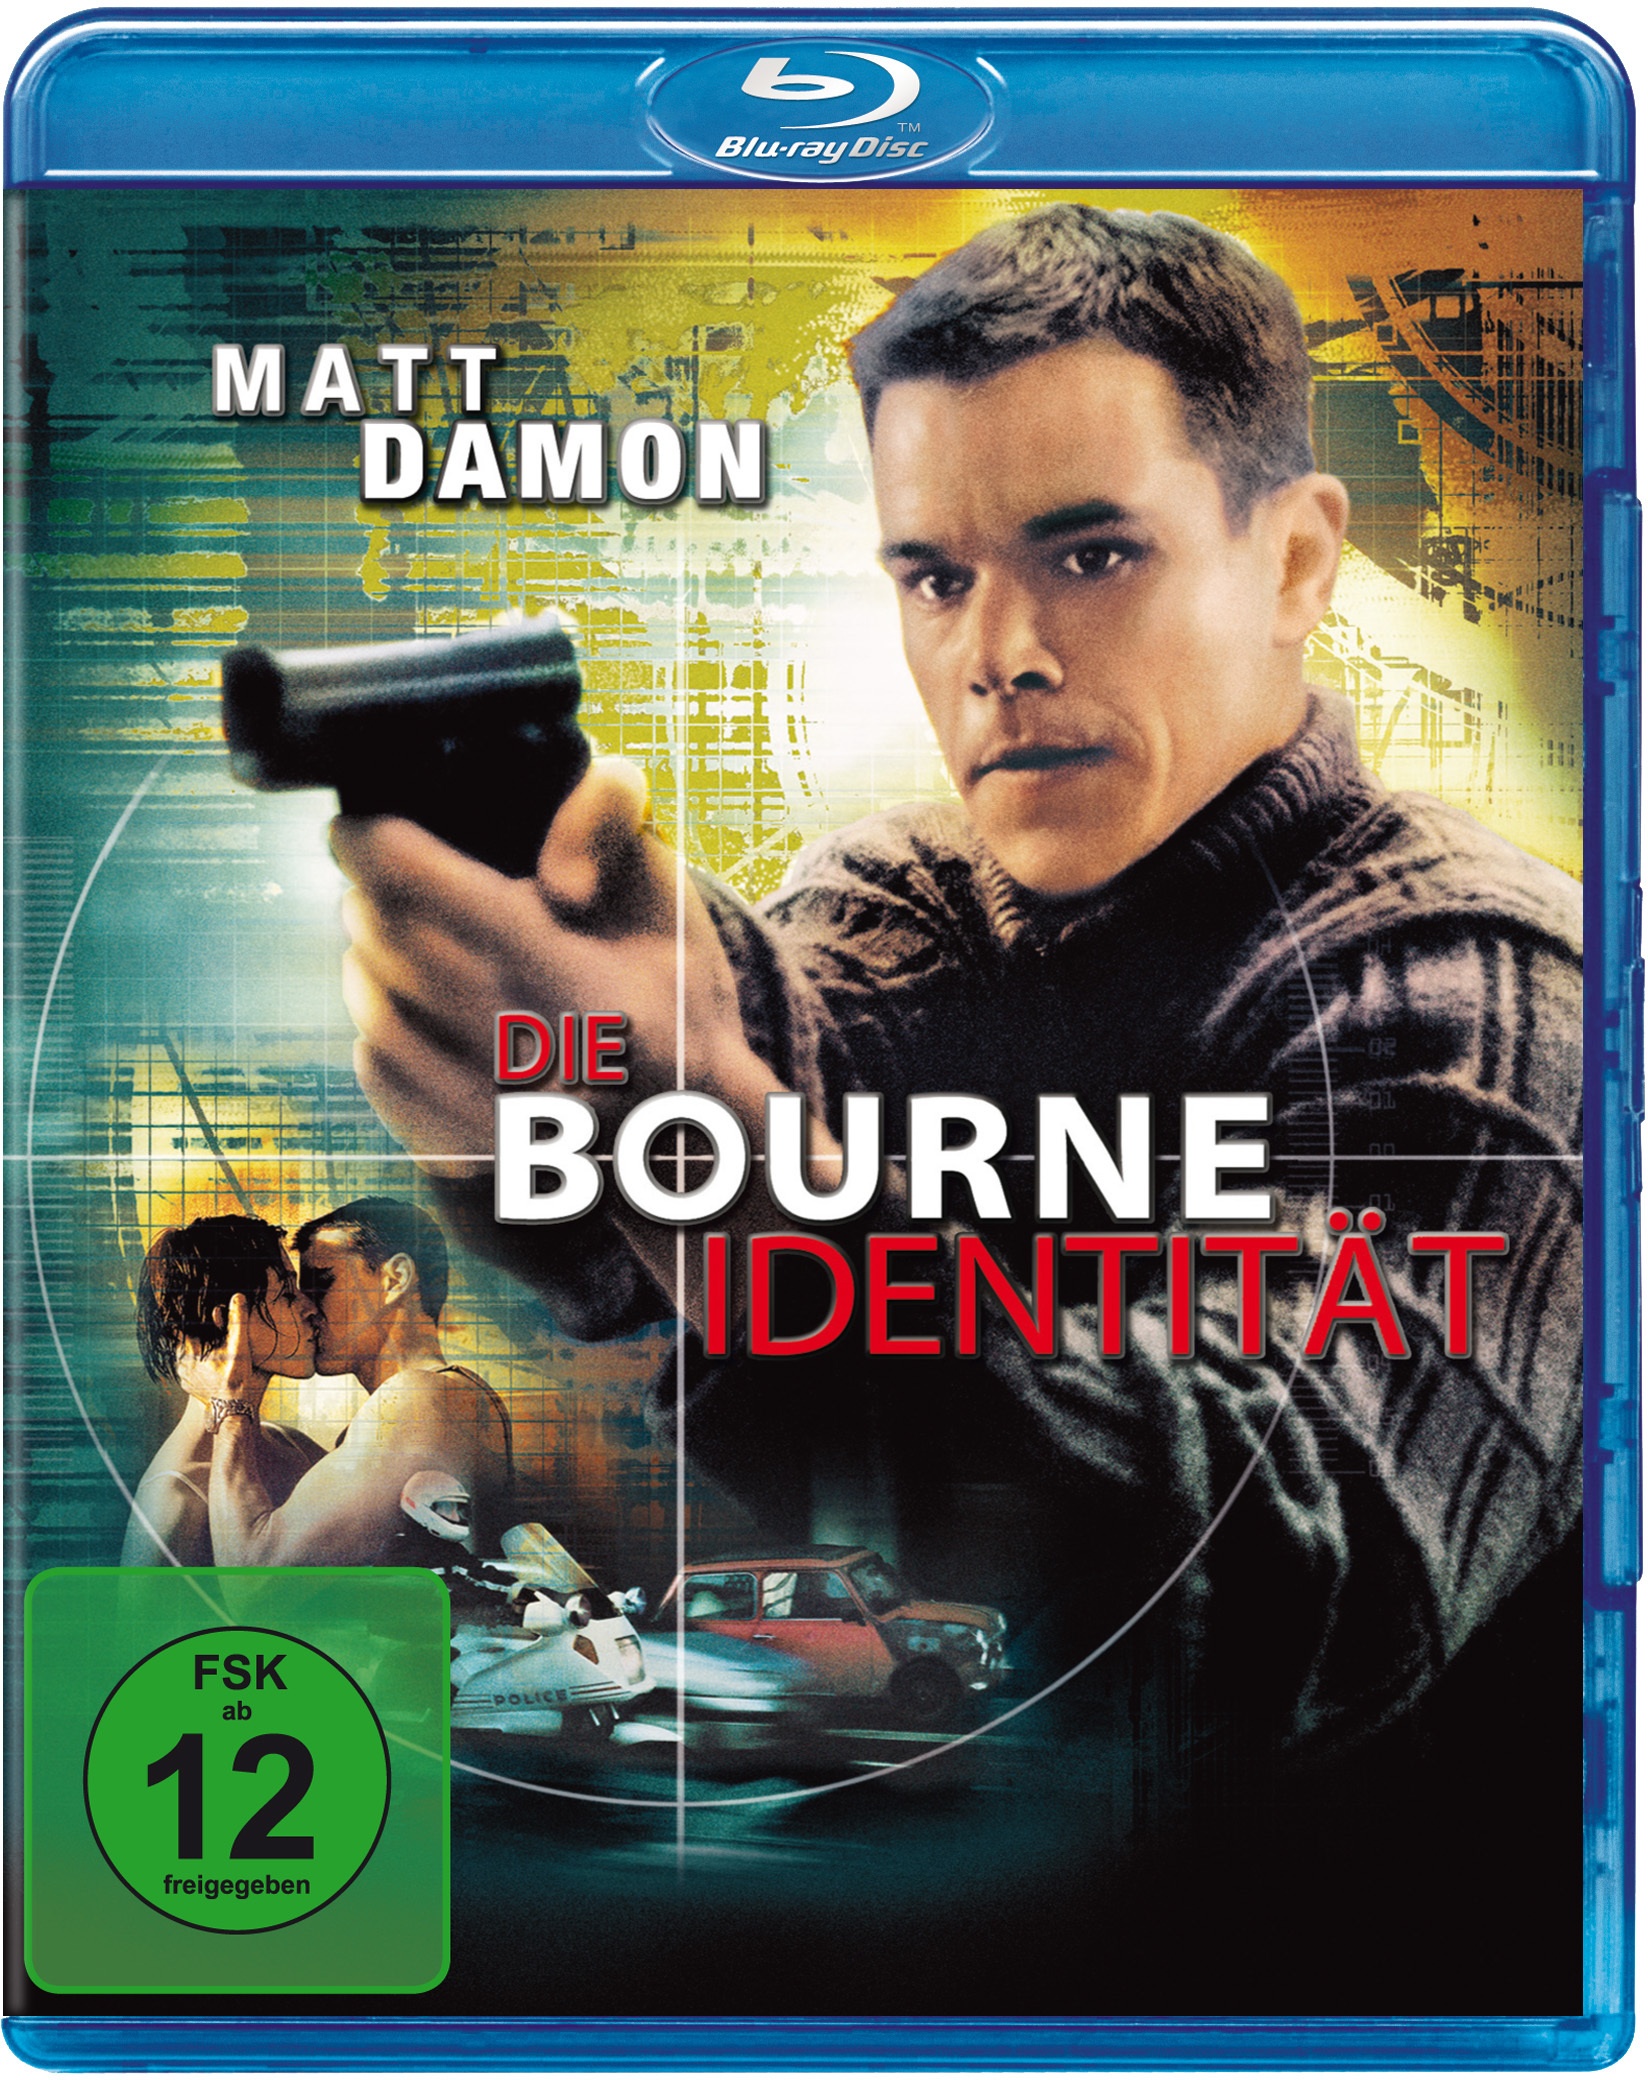 Die Bourne Identität (Blu-ray)